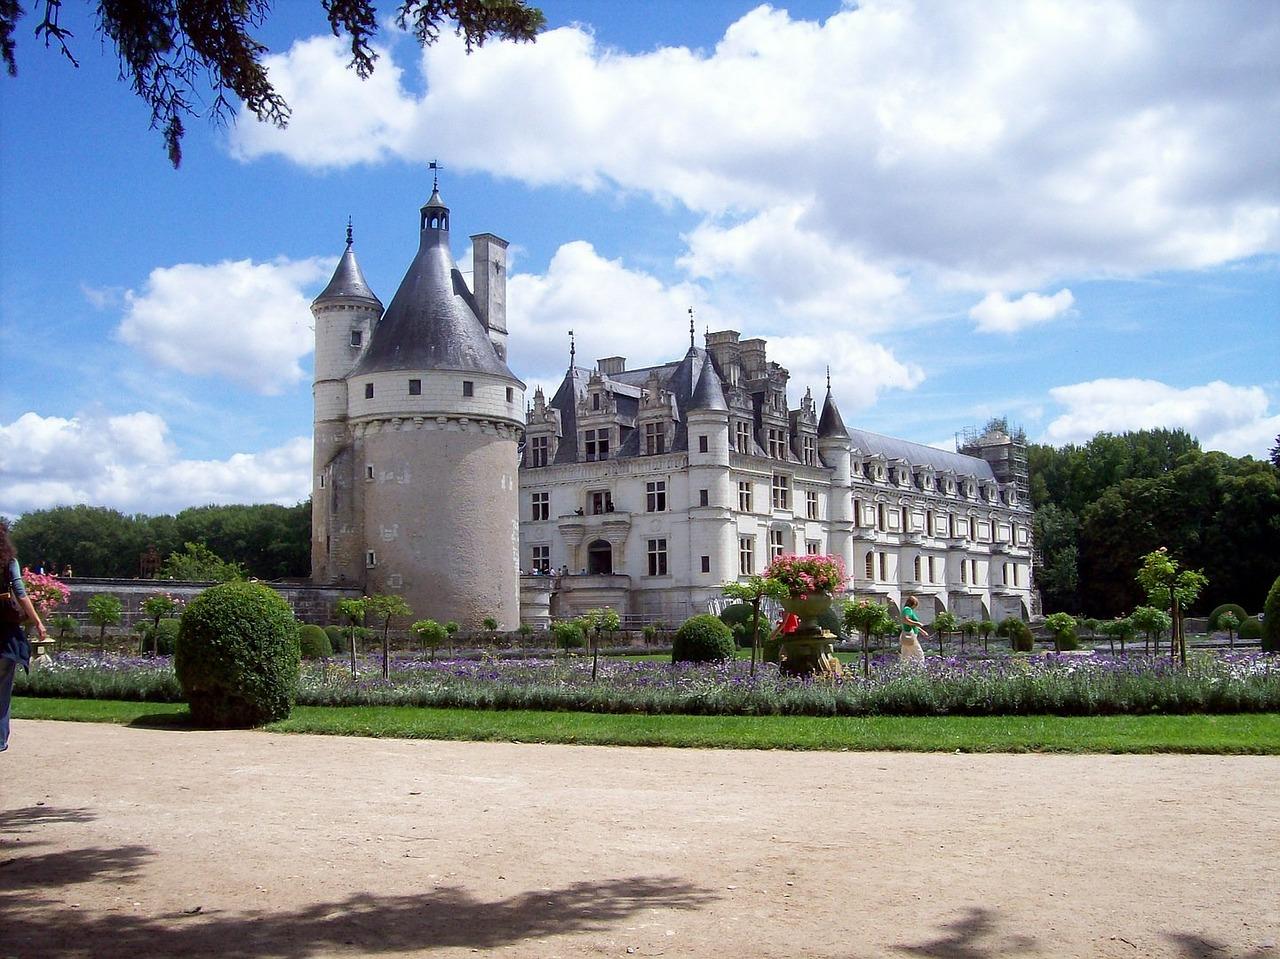 Pass château de Chambord et château de Chenonceau